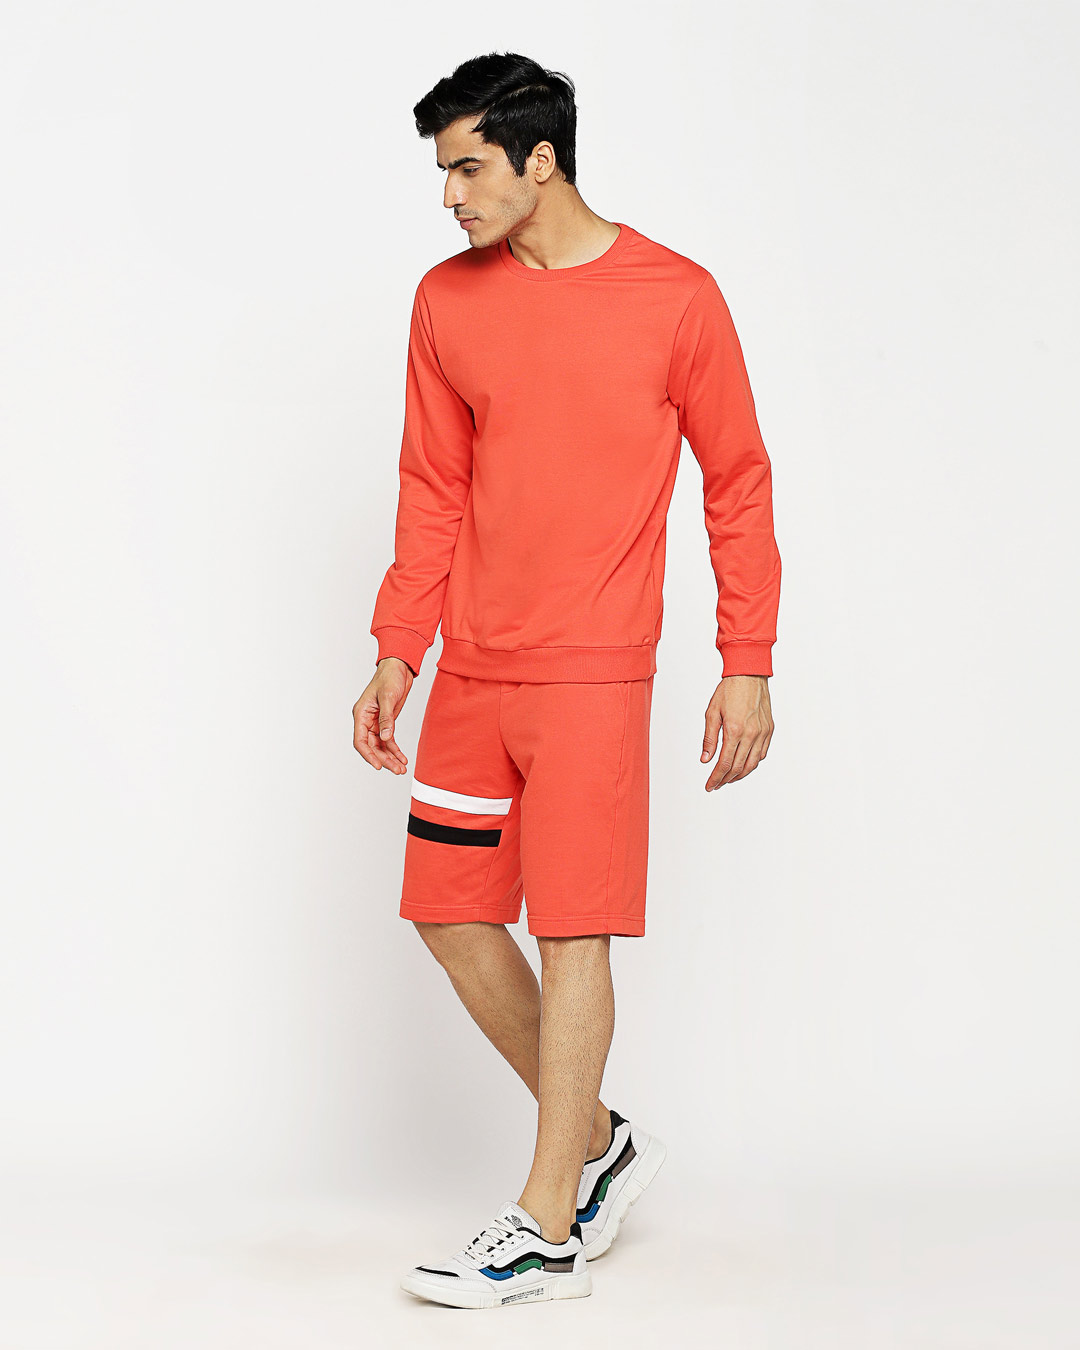 ShopSmoke Red Fleece Sweatshirt